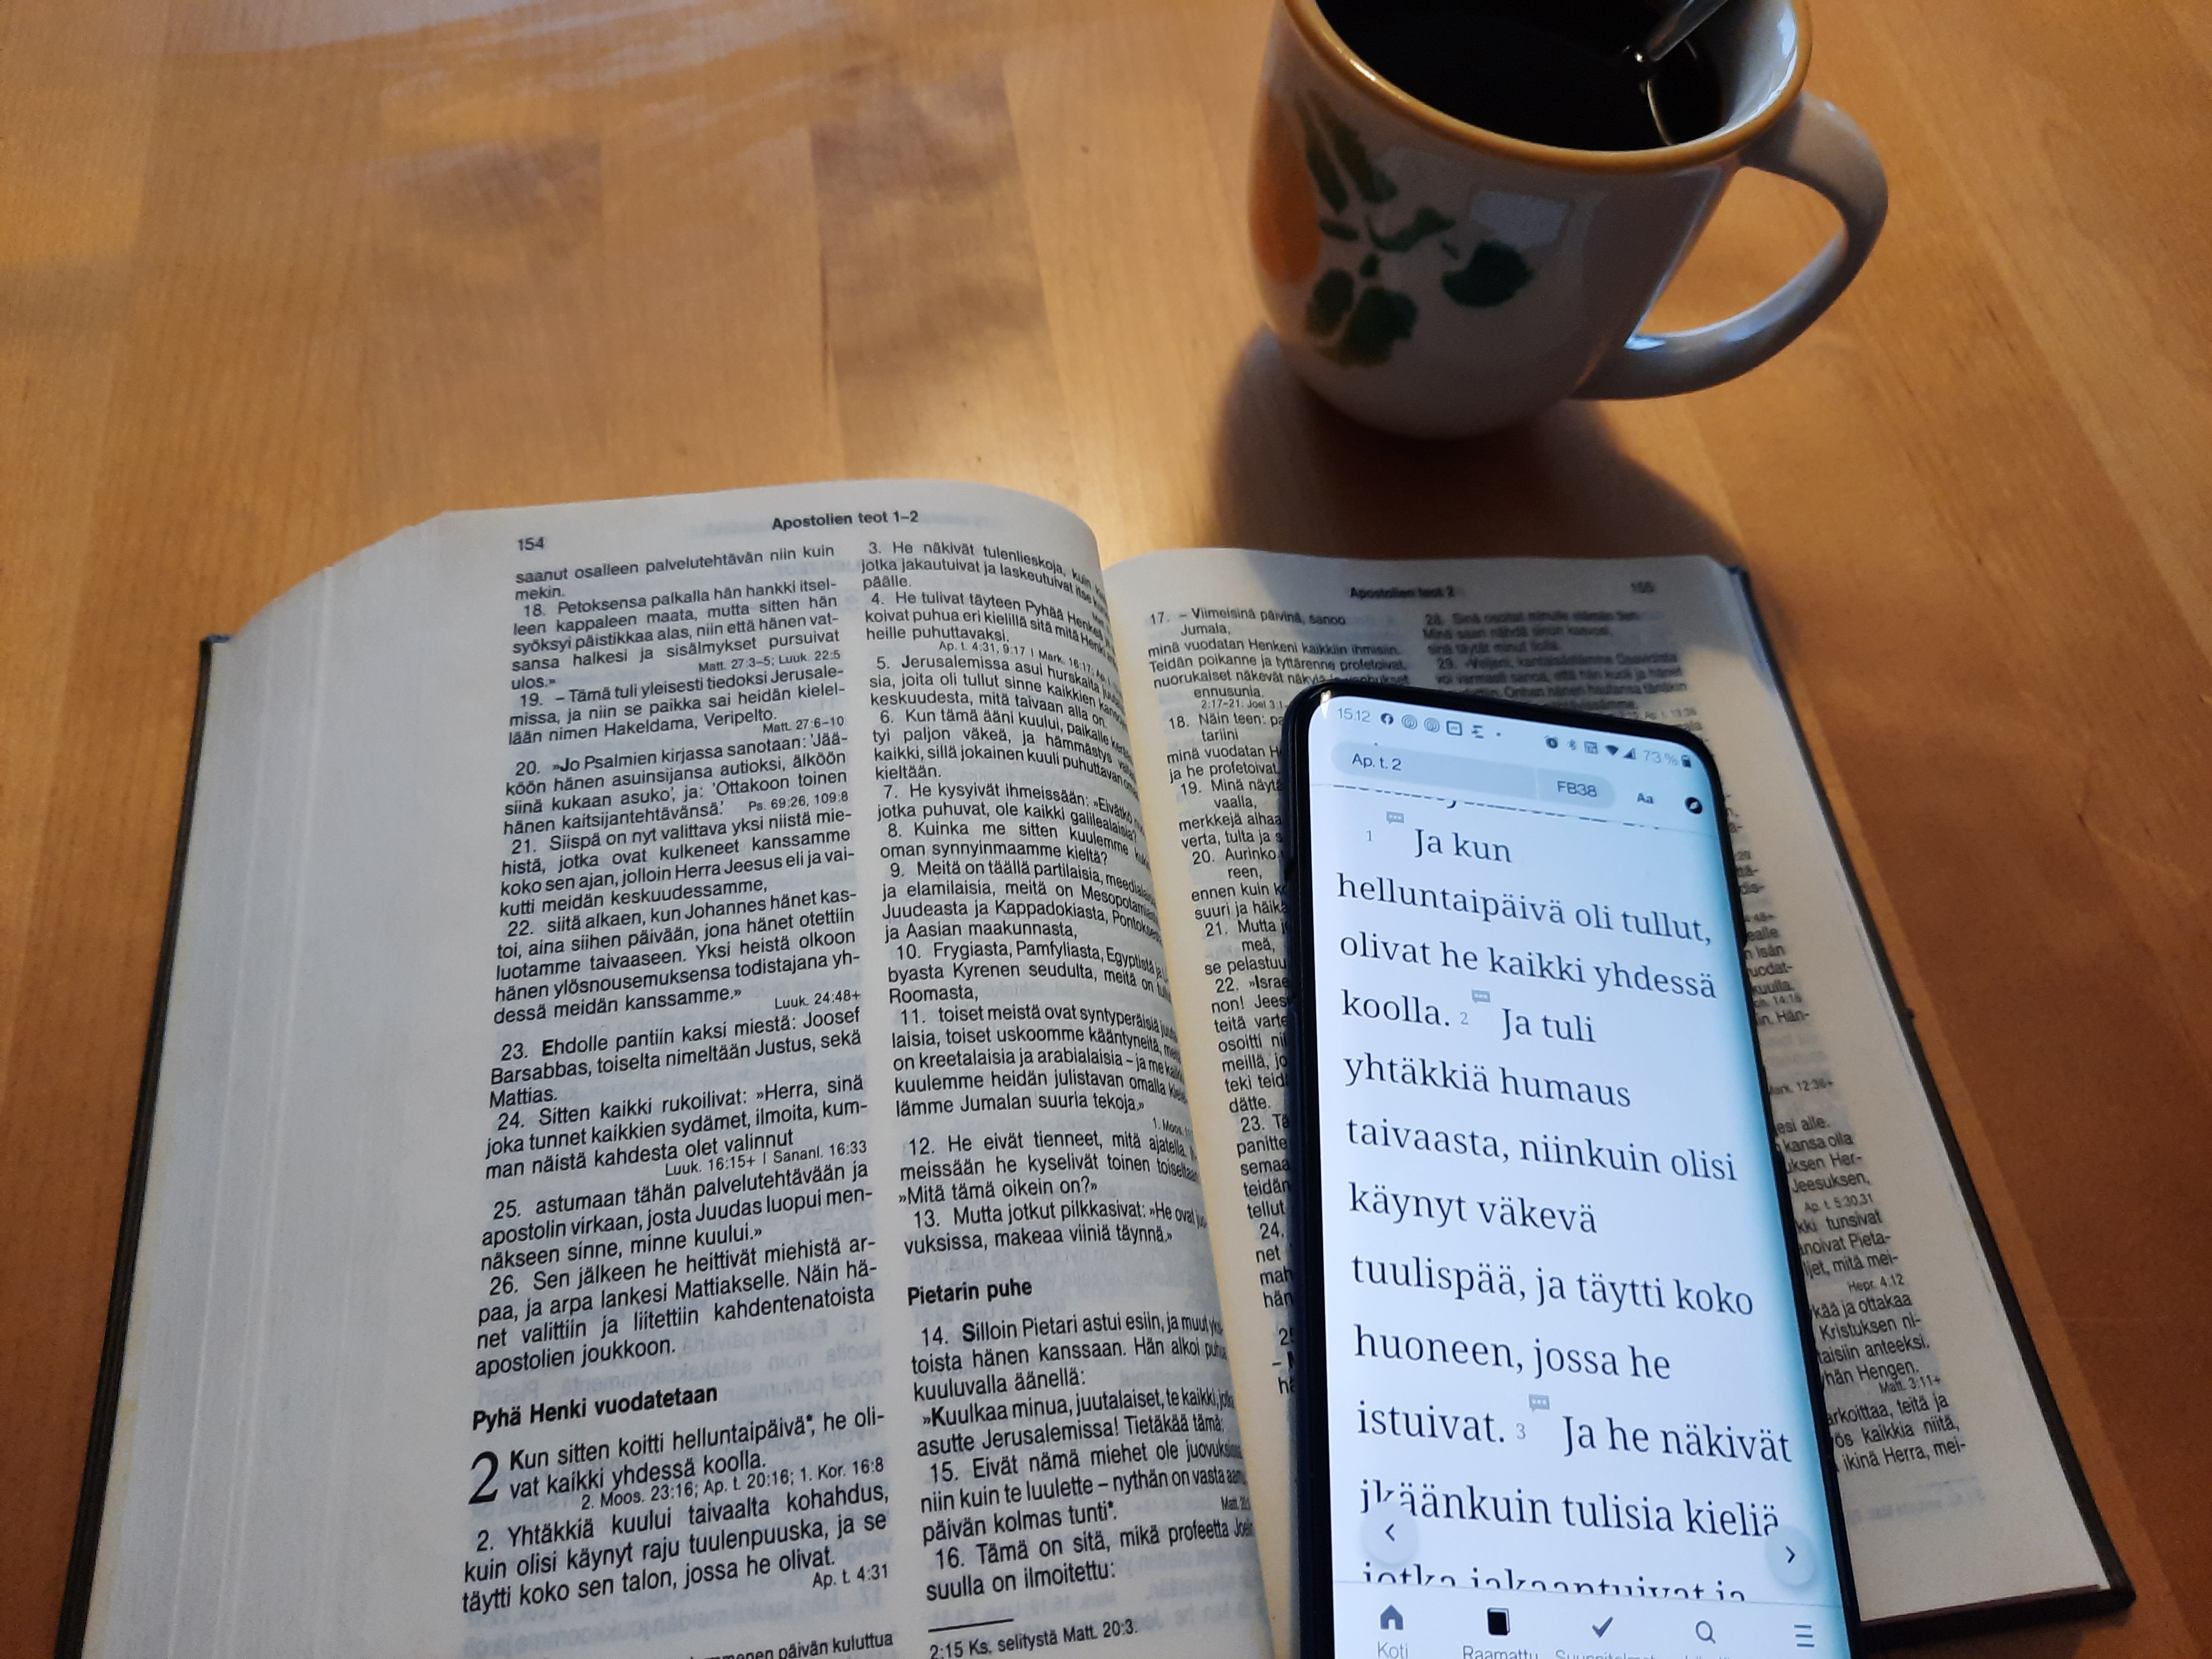 Raamattu pöydällä. Raamatun päällä kännykkä jossa avattuna Raamattusovellus. Vieressä kahvikuppi.